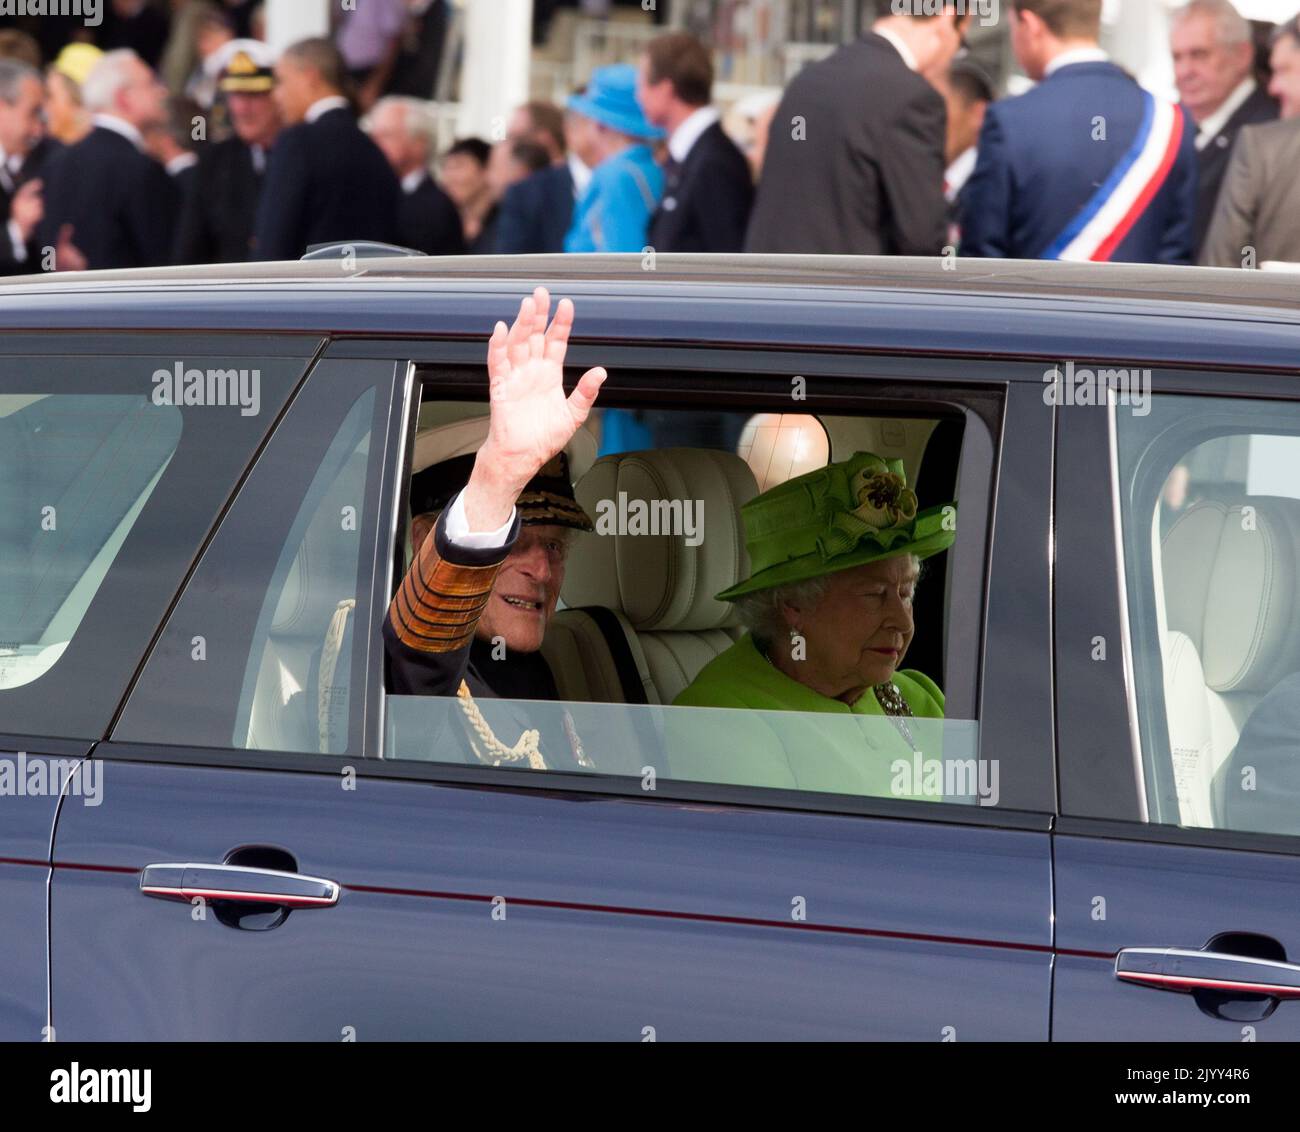 20140606 - OUISTREHAM, FRANKREICH: Prinz Philip, Herzog von Edinburgh und die britische Königin Elizabeth II., abgebildet während einer Zeremonie anlässlich des 70.. Jahrestages der Landung der Alliierten im Juni 1944 in der Normandie, in Ouistreham, Frankreich, Freitag, 06. Juni 2014. BELGA FOTO POOL ALAIN ROLLAND Stockfoto